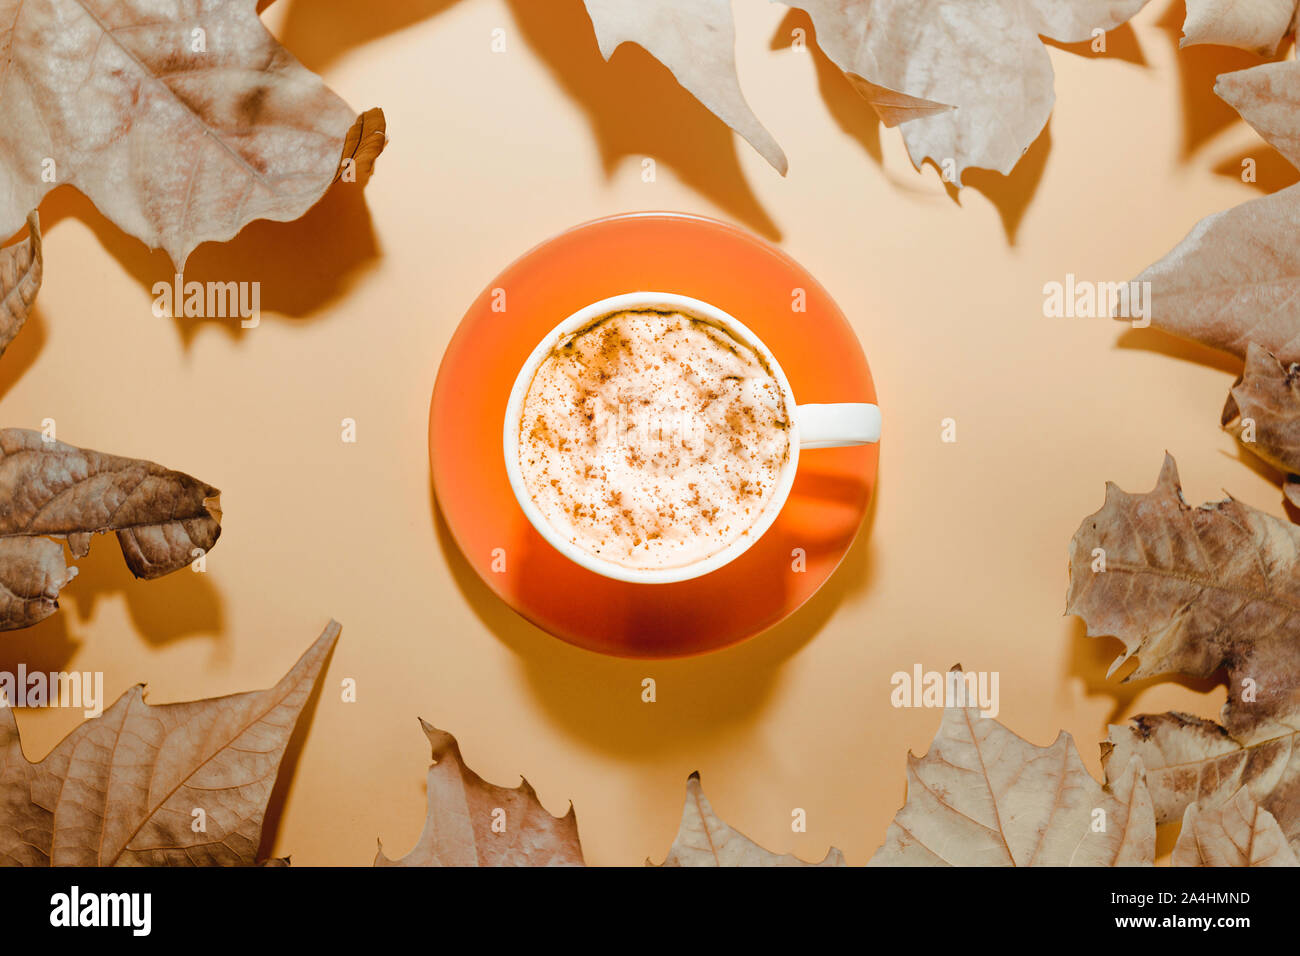 Les feuilles d'automne avec une tasse de café sur fond brun. Mise à plat Banque D'Images